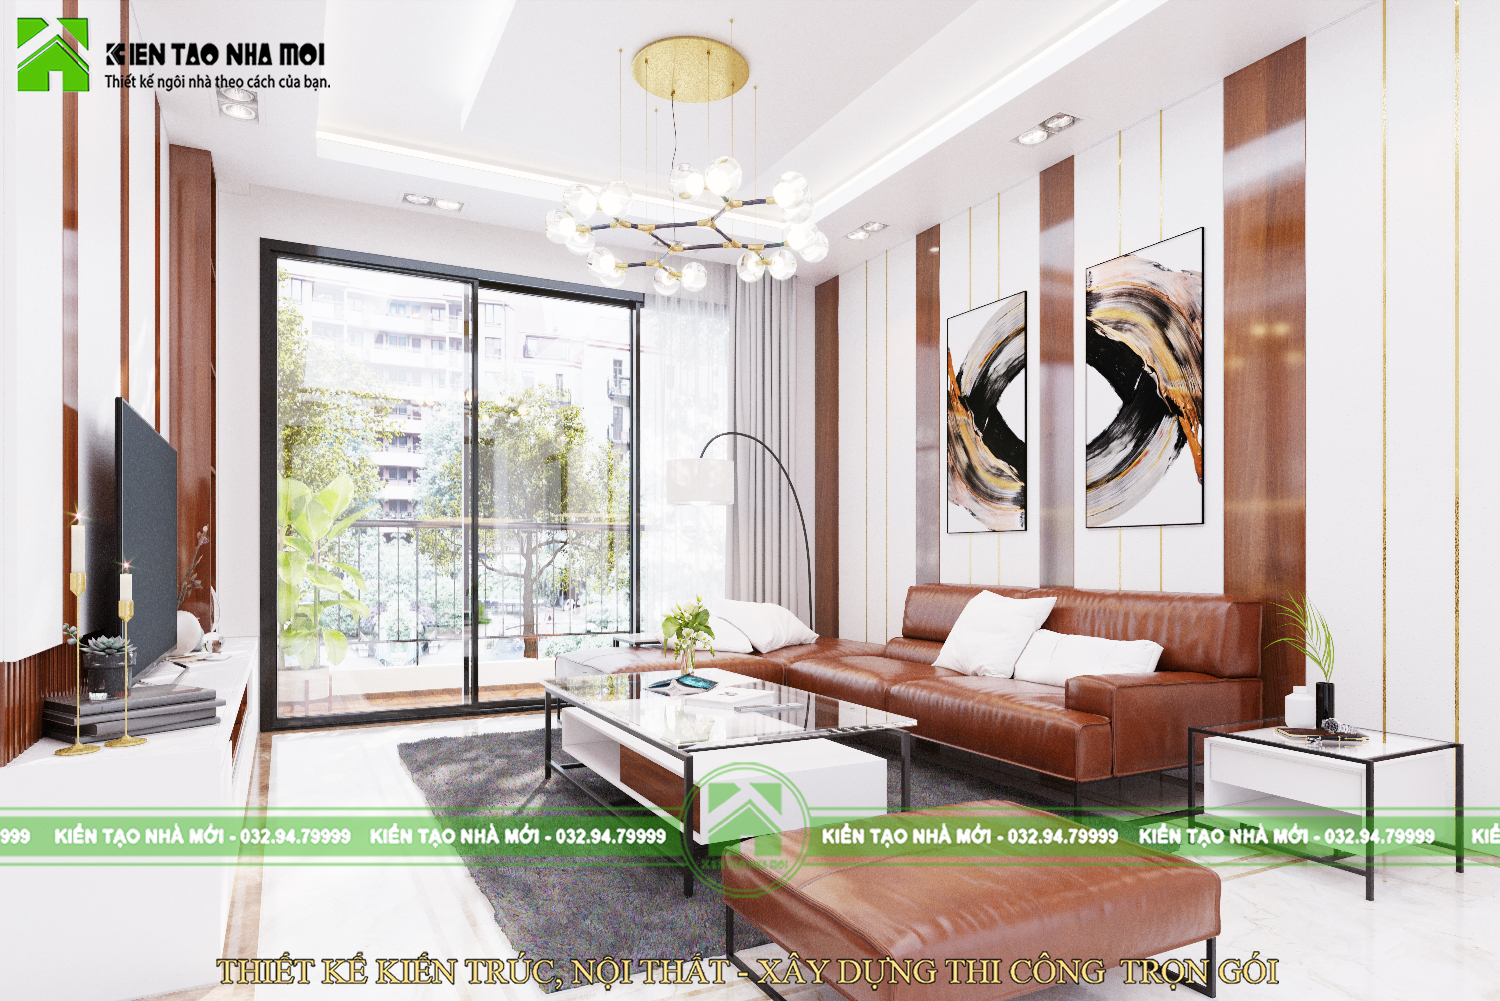 Thiết kế nội thất Biệt Thự tại Thái Nguyên Thiết kế nội thất nhà ở gia đình hiện đại tại Thái Nguyên 1587915120 1